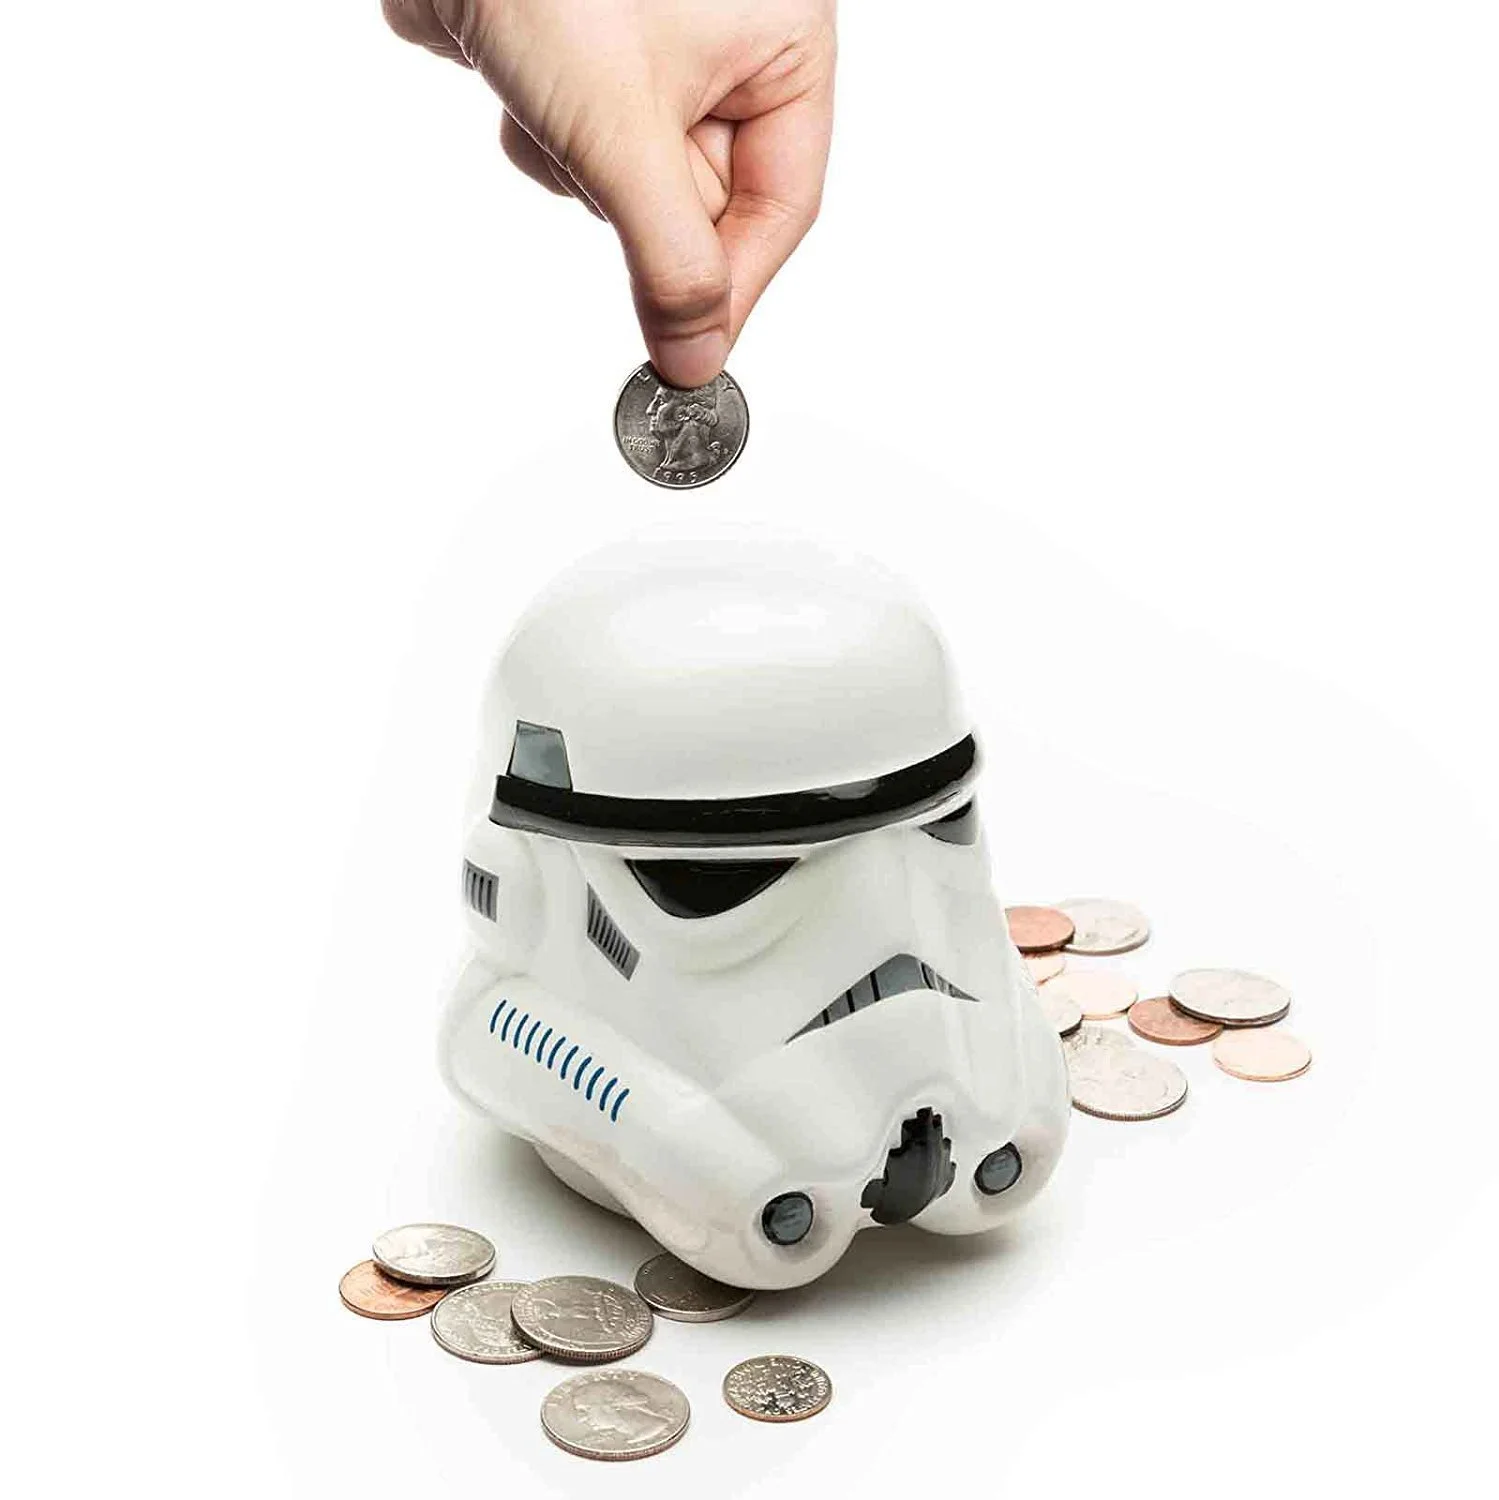 EA сдалась! Никаких больше покупок за реальные деньги в Star Wars: Battlefront 2 — пока - фото 2